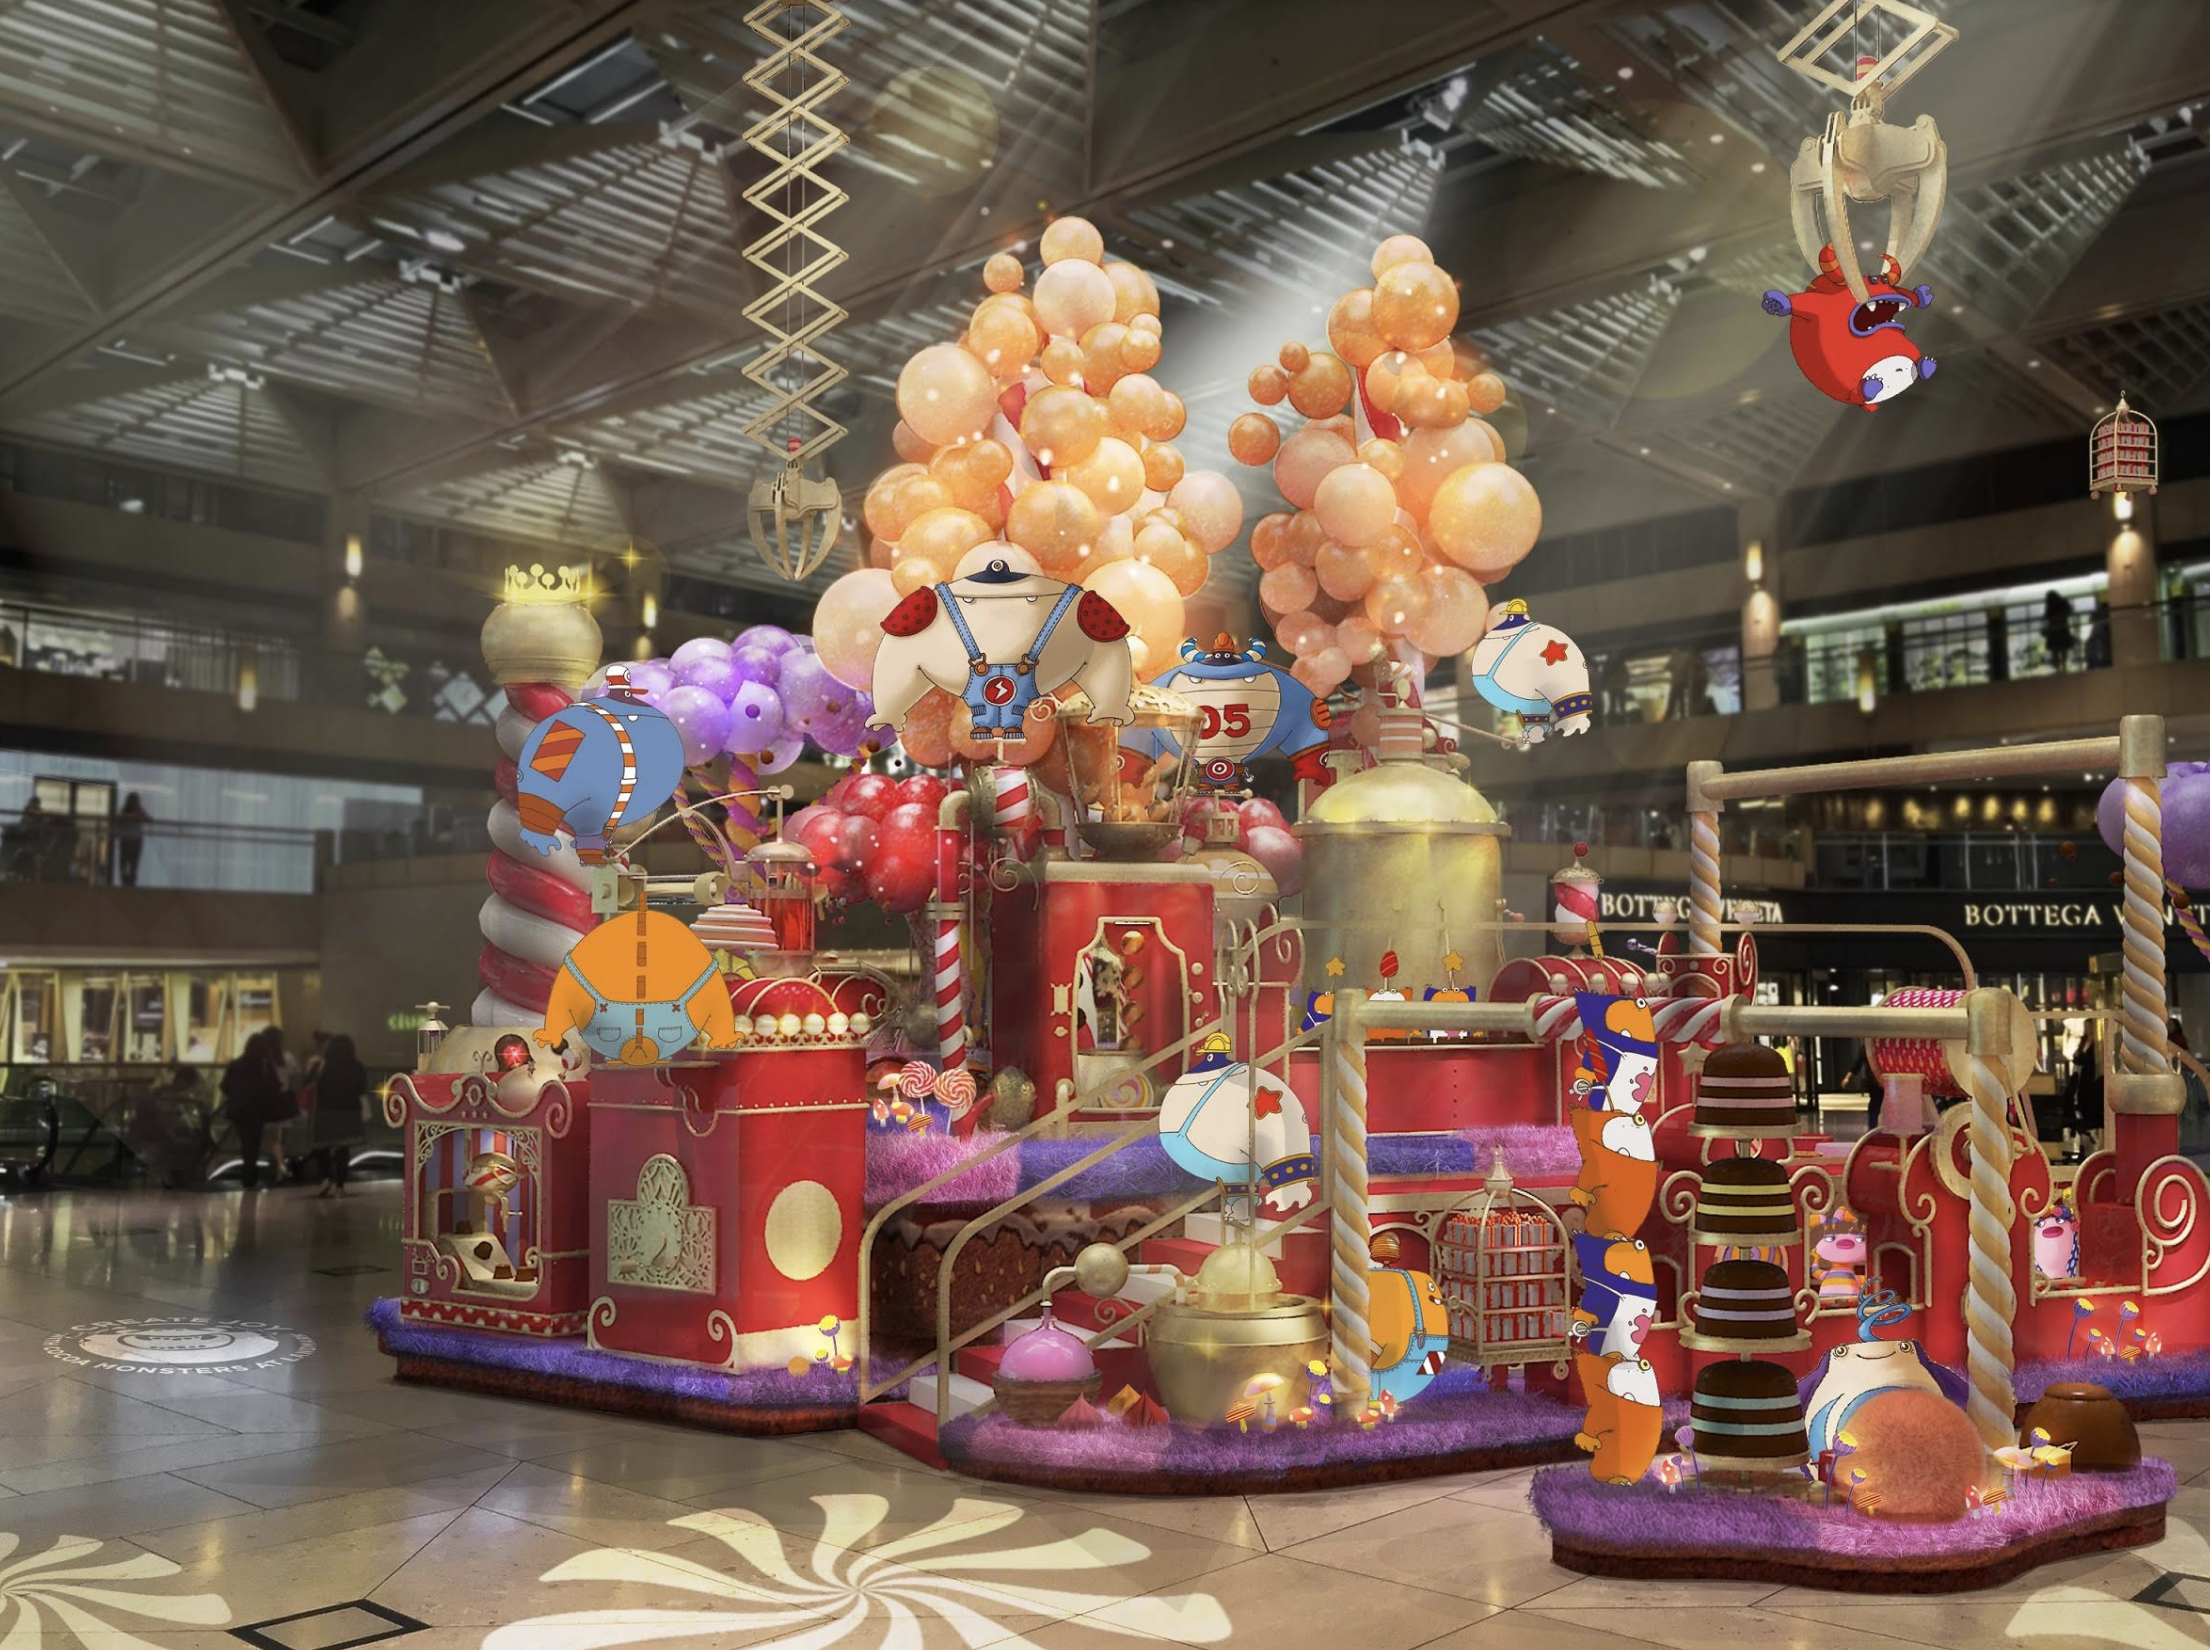 Christmas Decorations And Promotions For Chirstmas at Landmark Hong Kong.